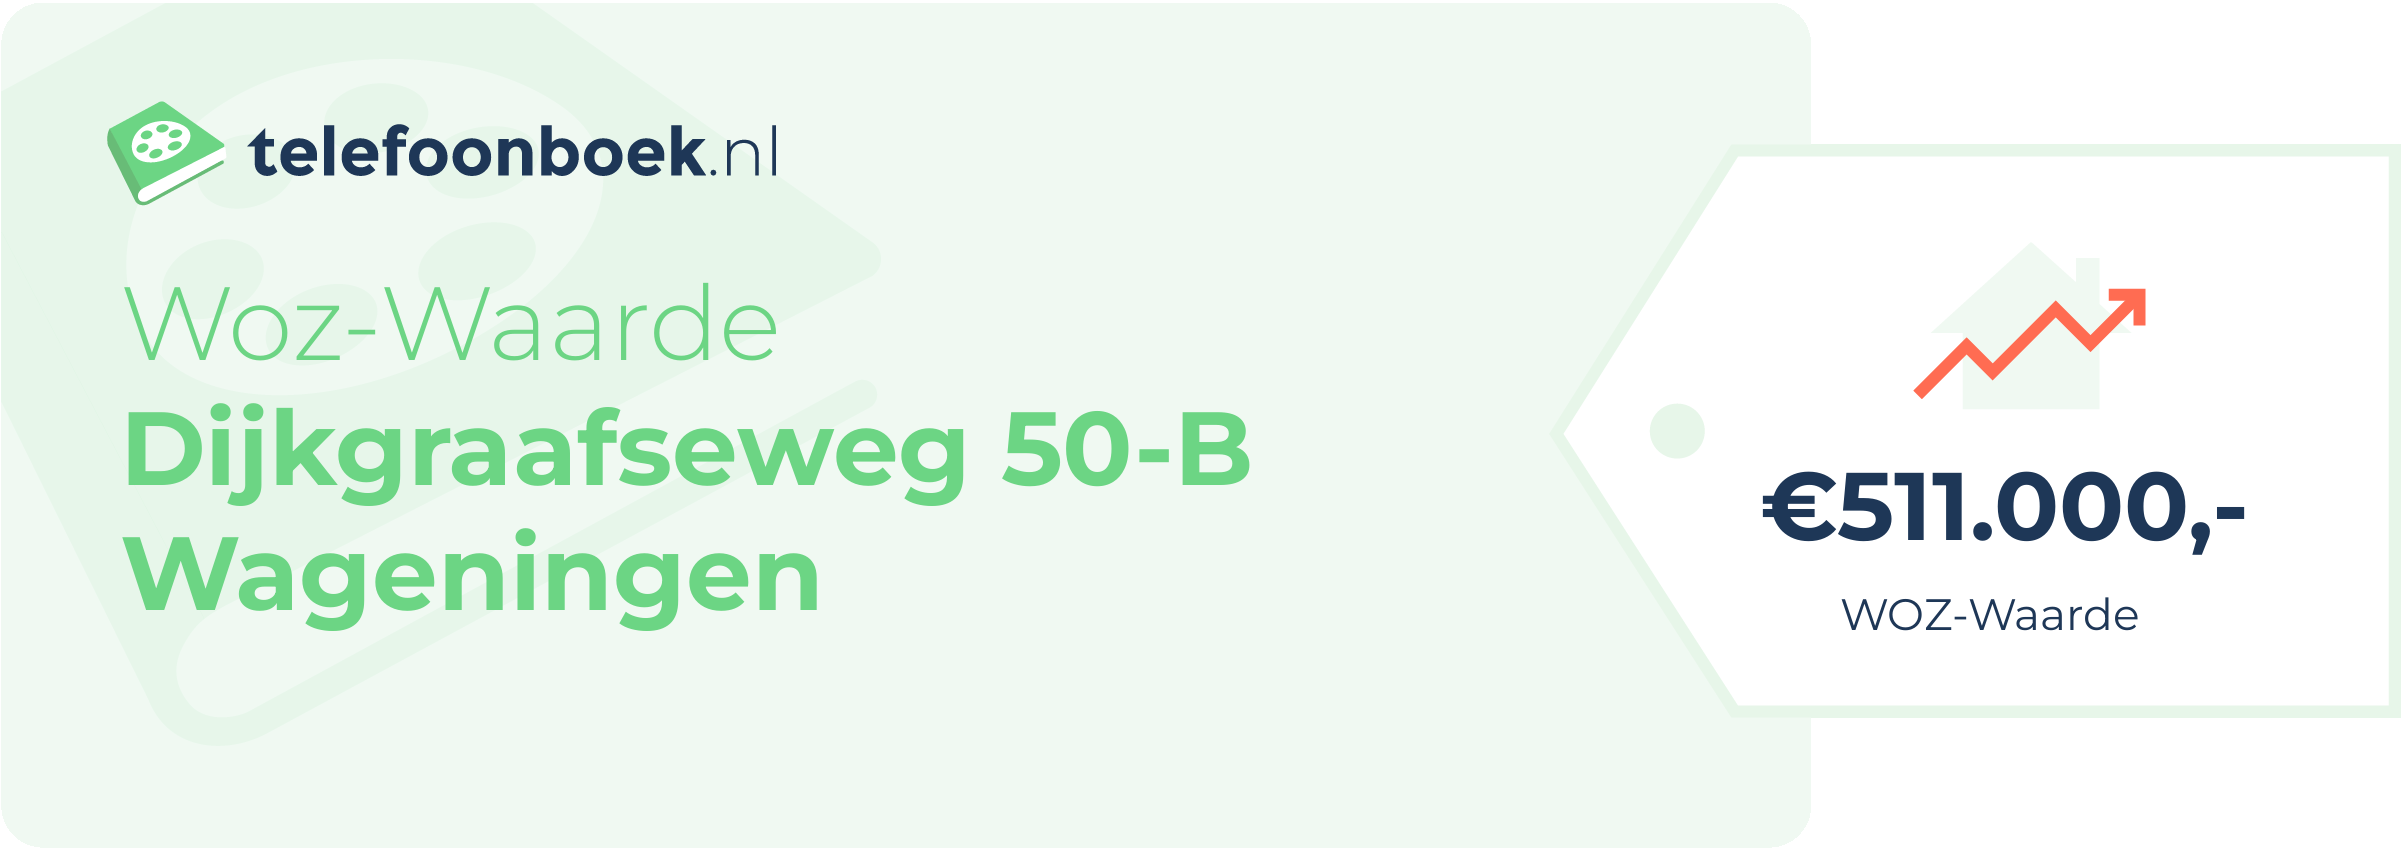 WOZ-waarde Dijkgraafseweg 50-B Wageningen